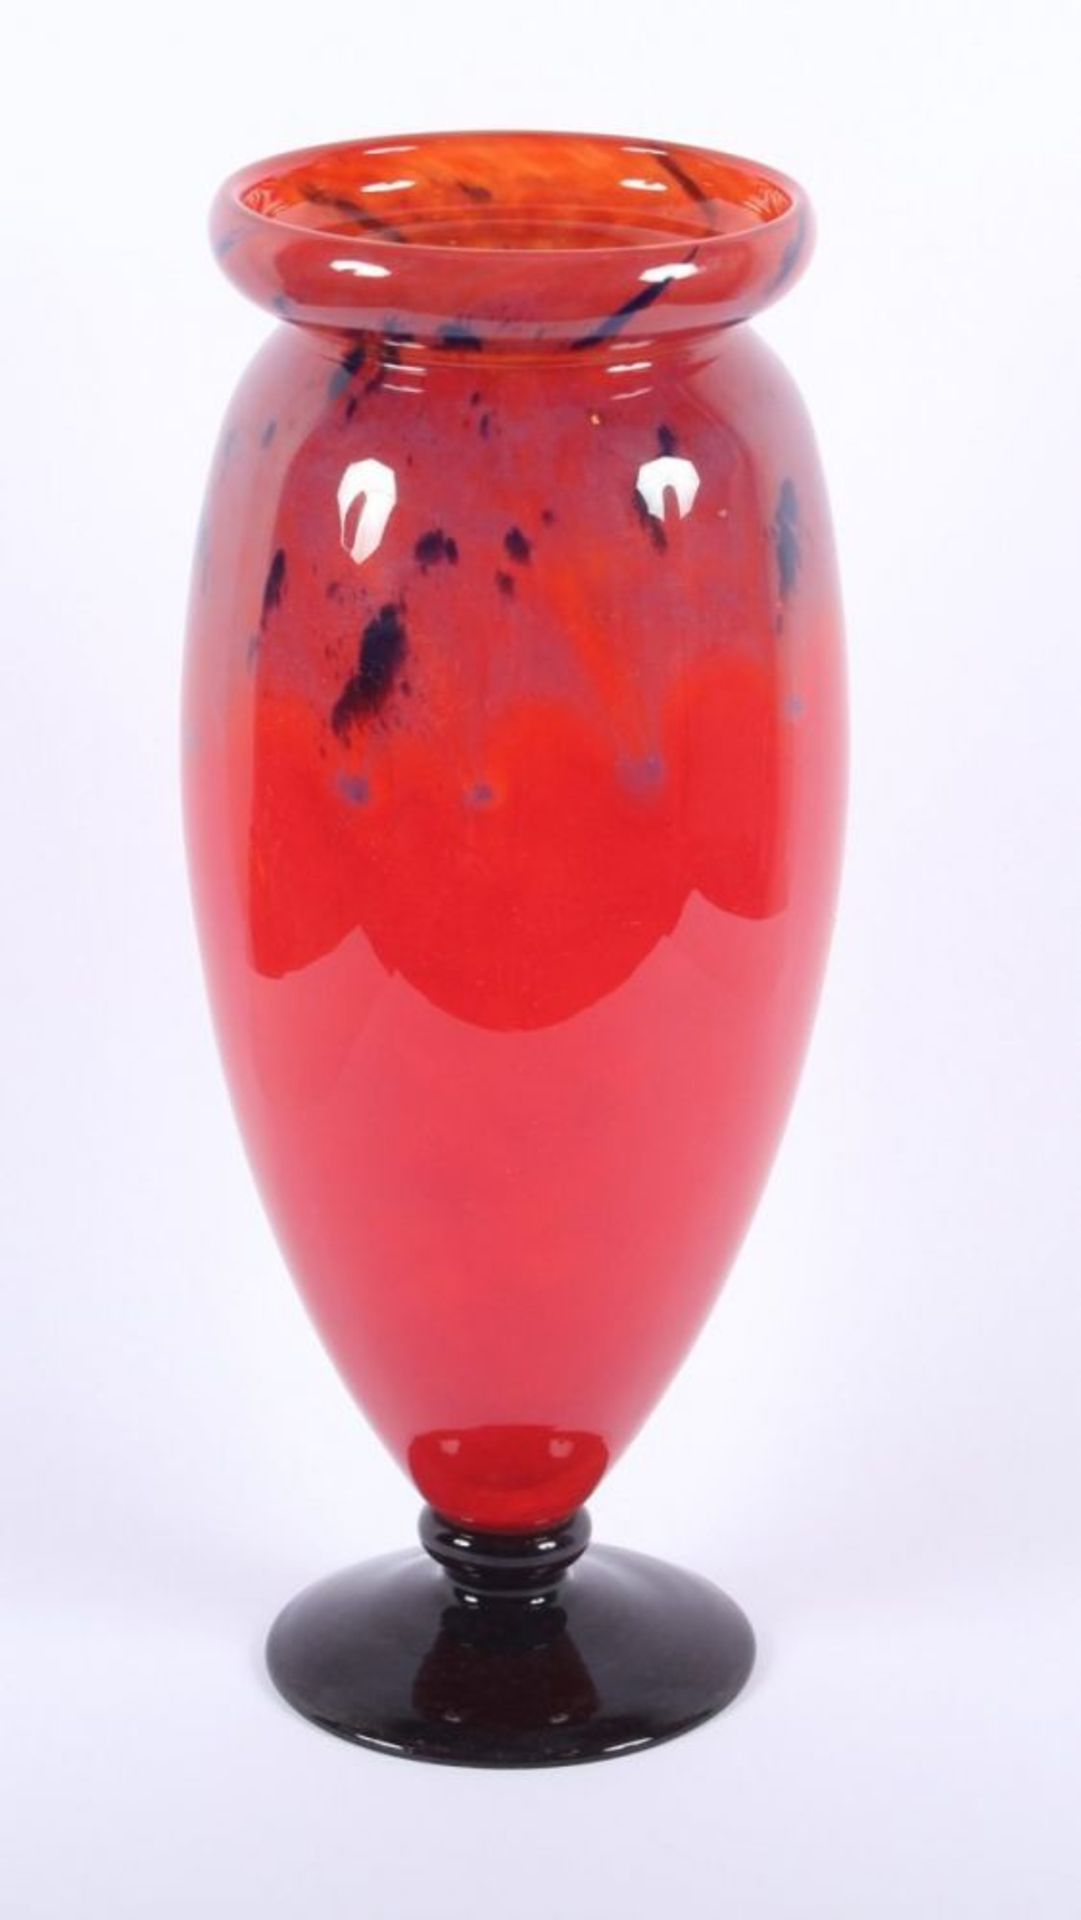 ZIERVASE, farbloses Glas, orange-rot getönt, violette und dunkelblaue Pulvereinschmelzungen, H 39,5,